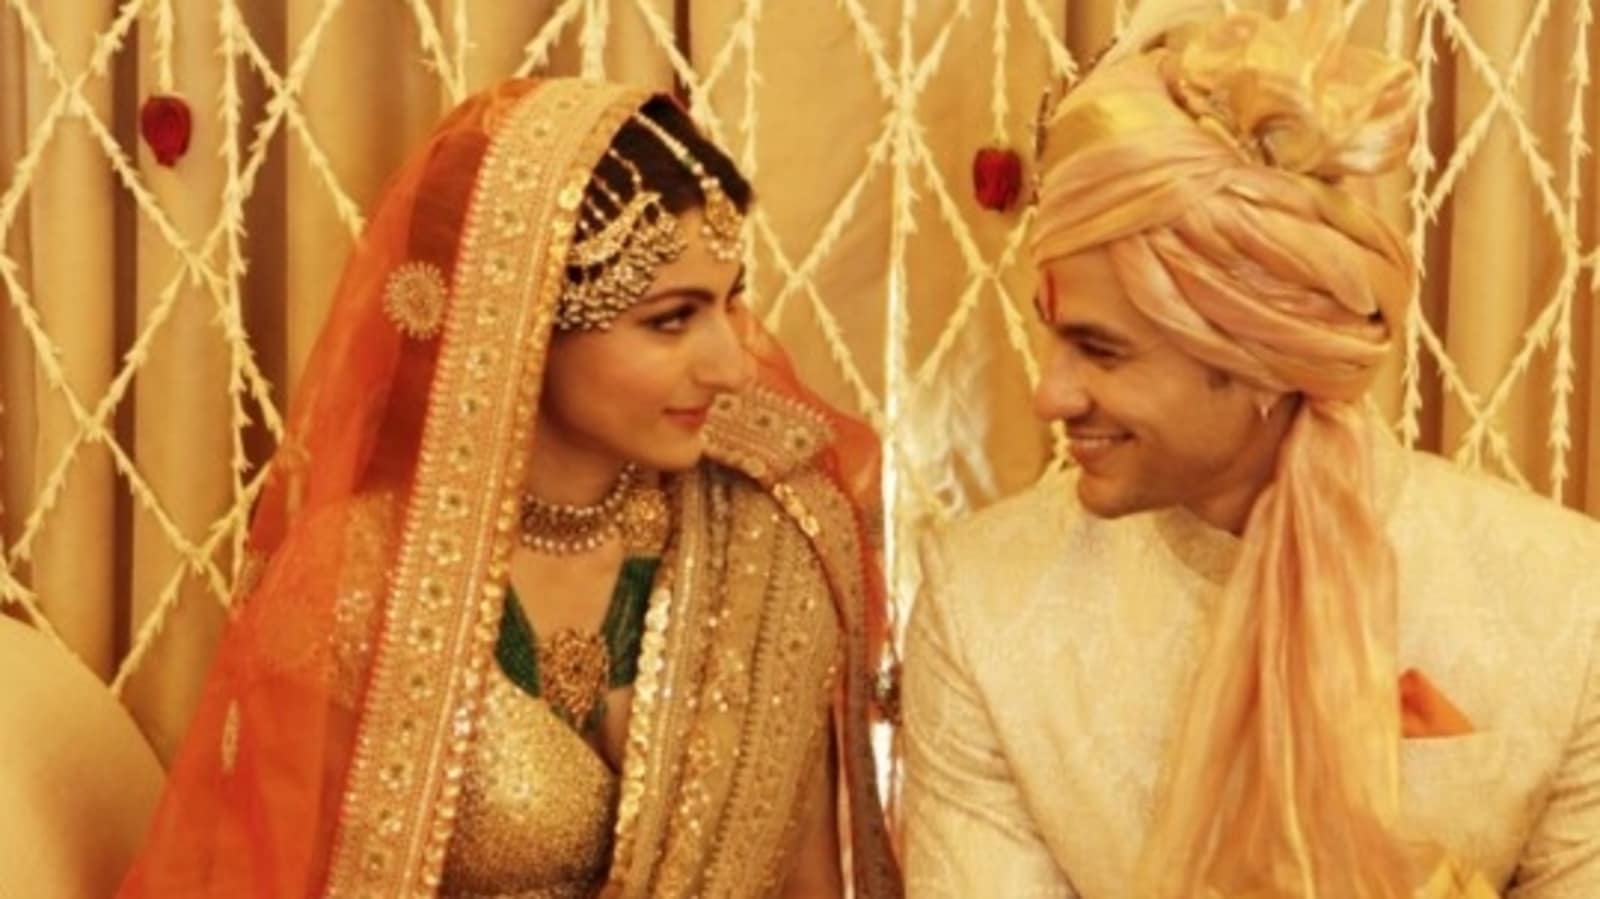 सोहा अली खान, कुणाल खेमू की घर पर की गई शादी का खूबसूरत वीडियो फिर आया सामने: ‘जब शादी साधारण हुआ करती थी’